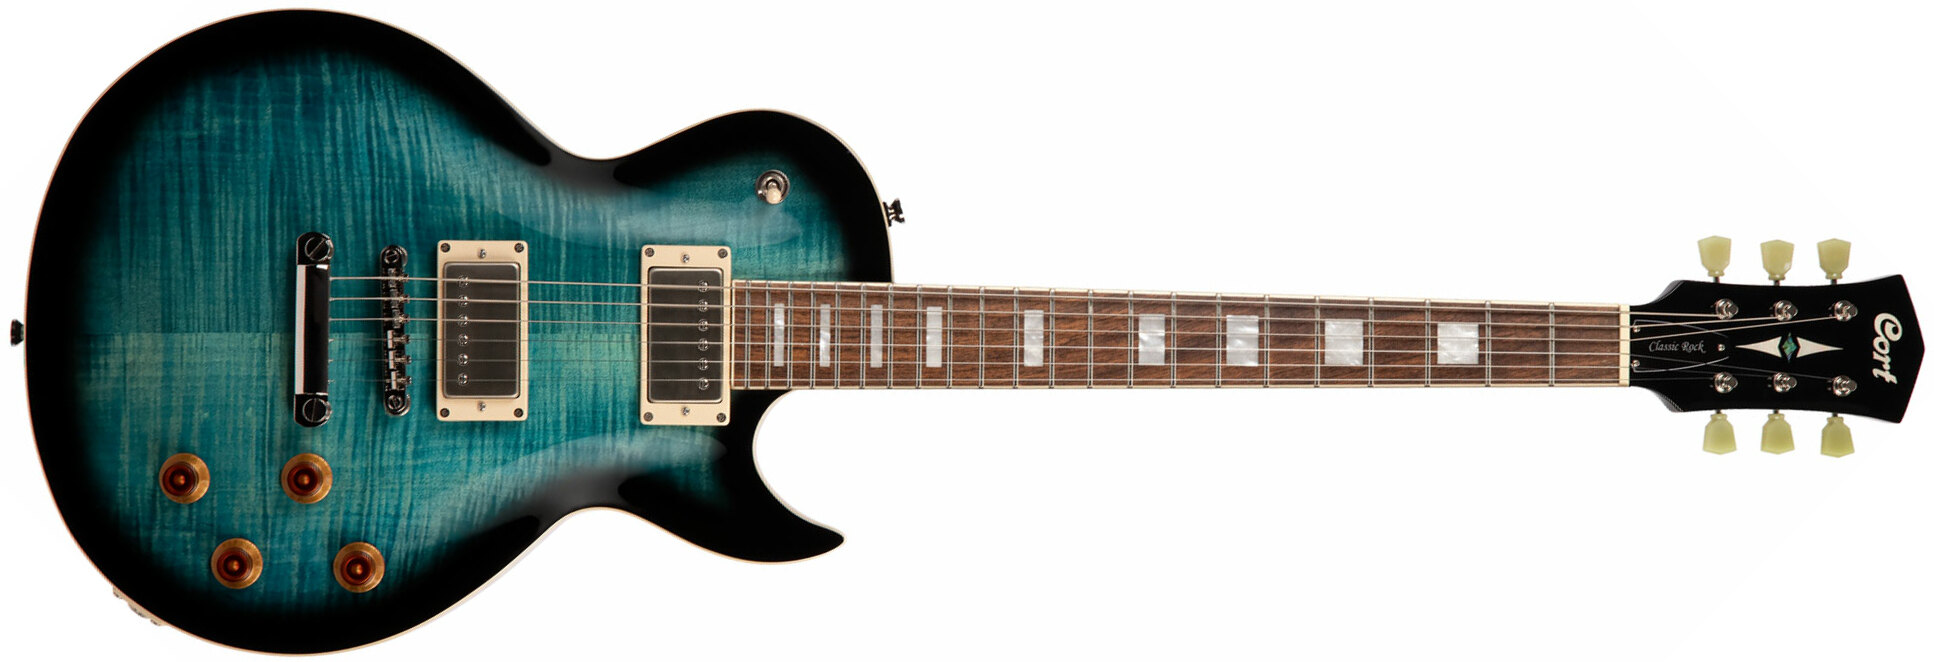 Cort Cr250 Dbb Classic Rock Ht Hh Jat - Dark Blue Burst - Enkel gesneden elektrische gitaar - Main picture